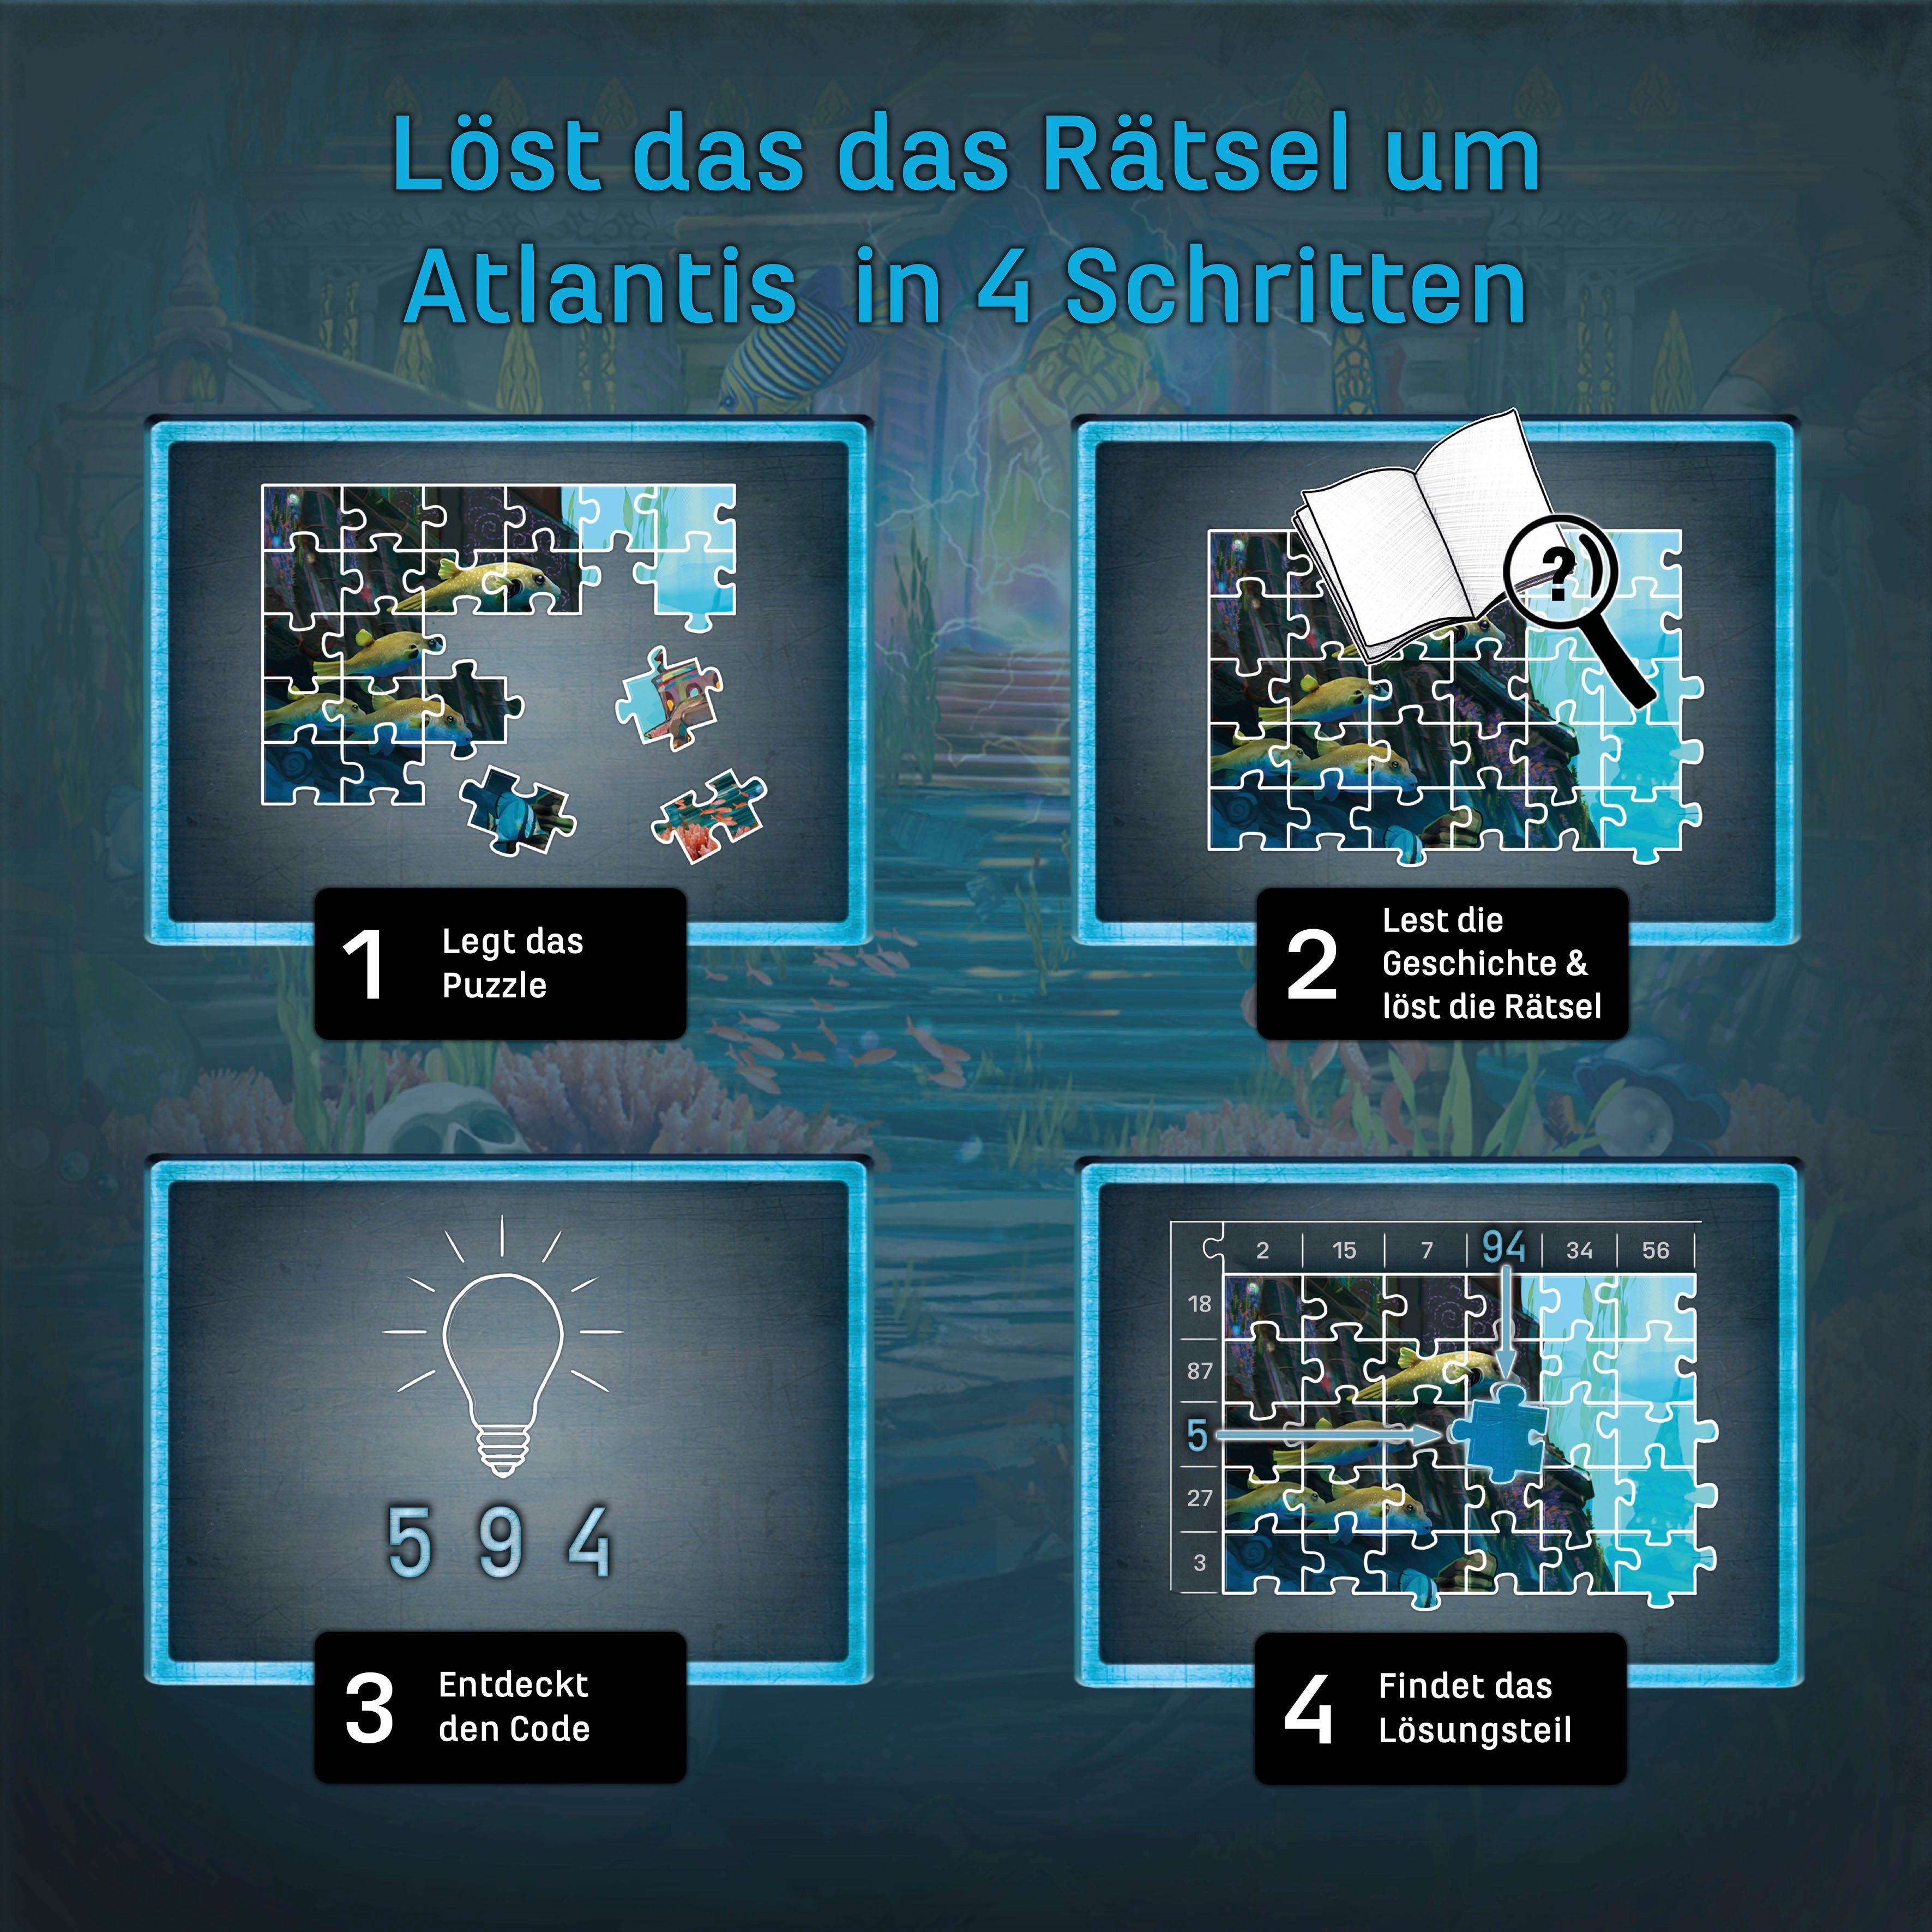 Das von in Atlantis, EXIT Puzzleteile, 500 Puzzle, Schlüssel Puzzle Der Kosmos Made Germany